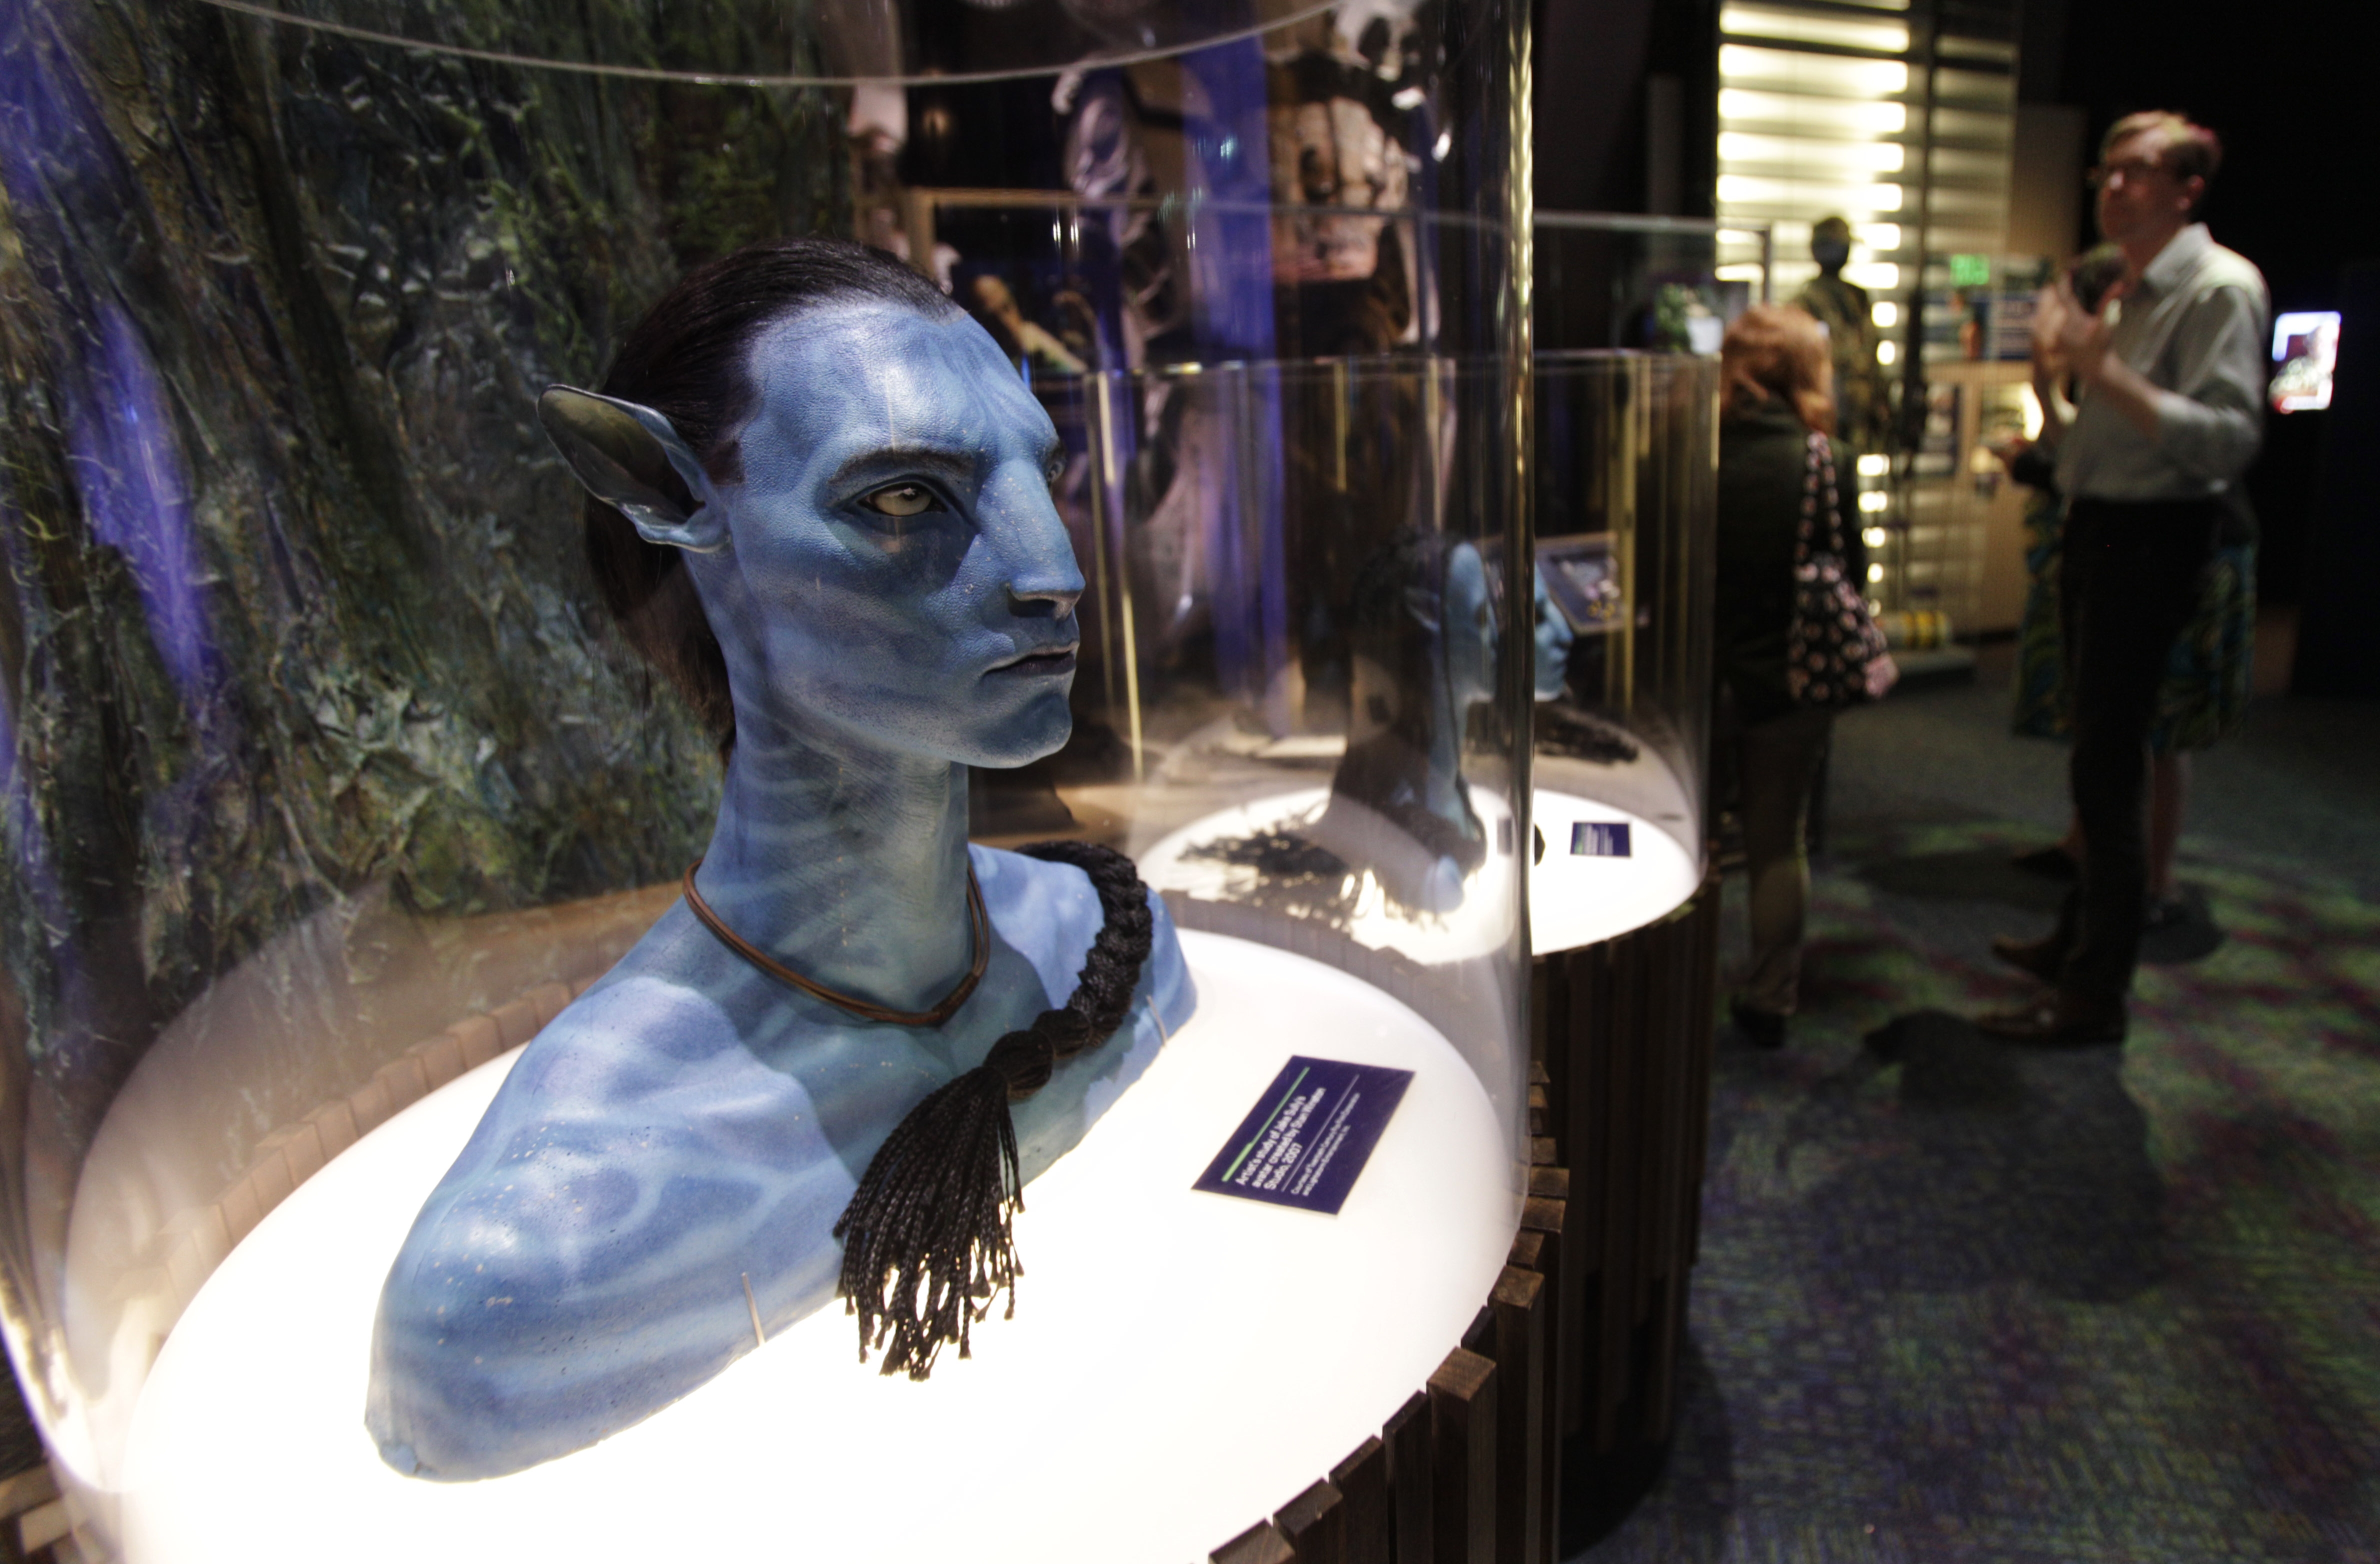 Museo de Seattle dedica exposición a "Avatar"